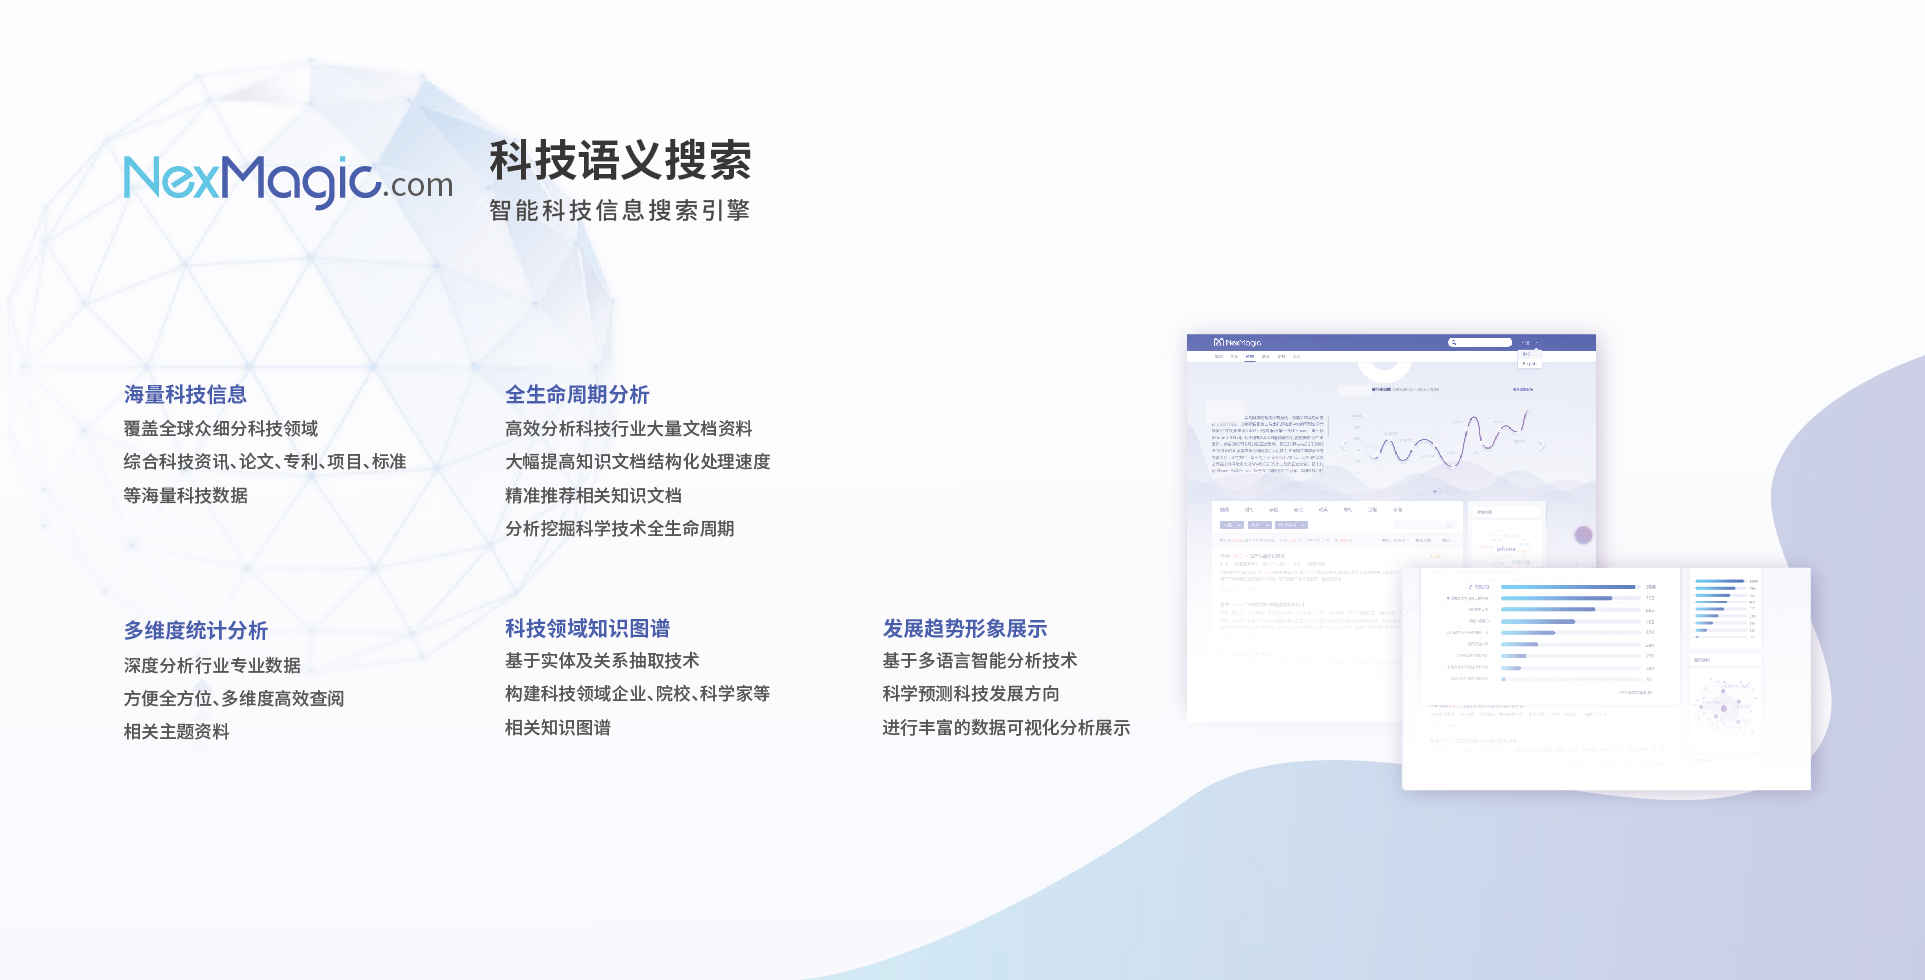 NexMagic 产品手册 中文 2018 V1.0-07.jpg